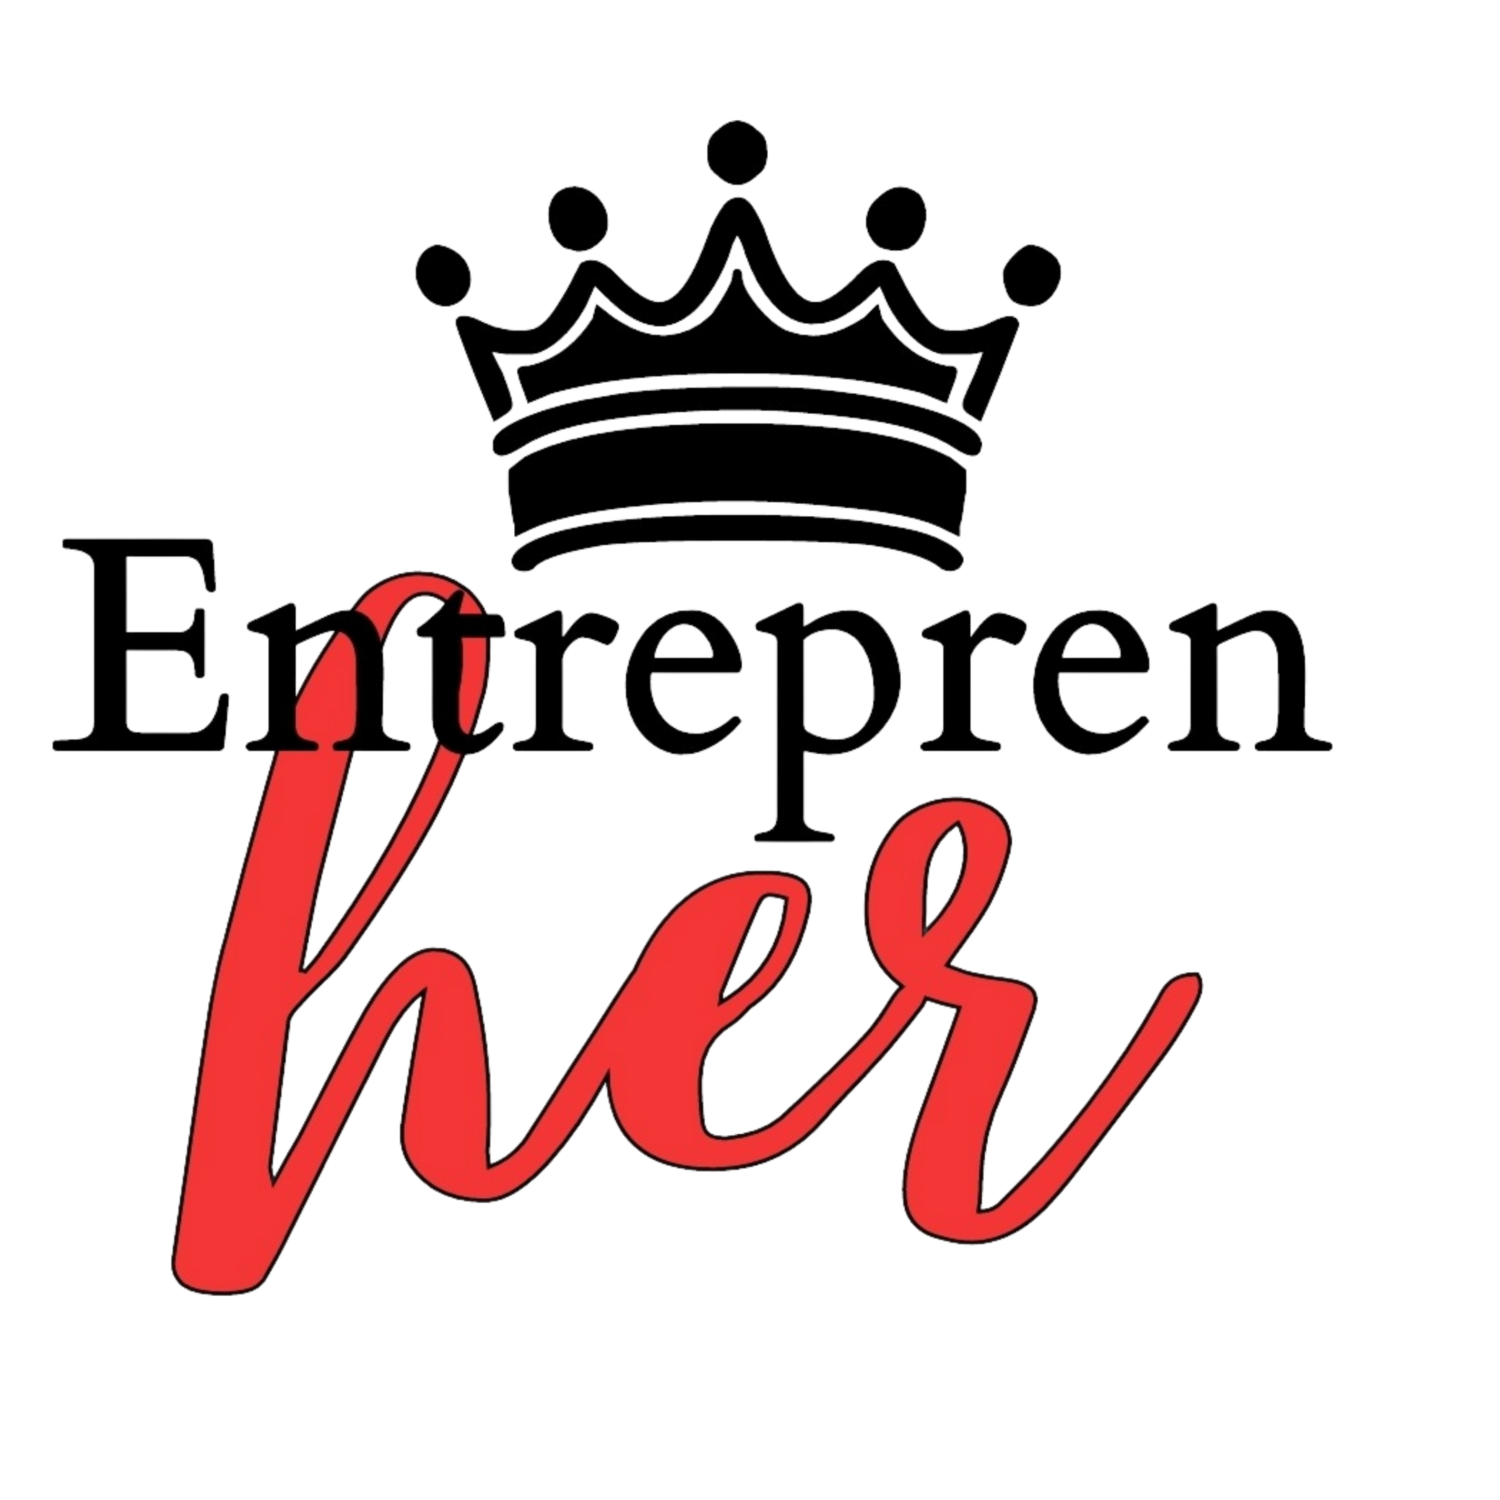 "Entrepren-her"